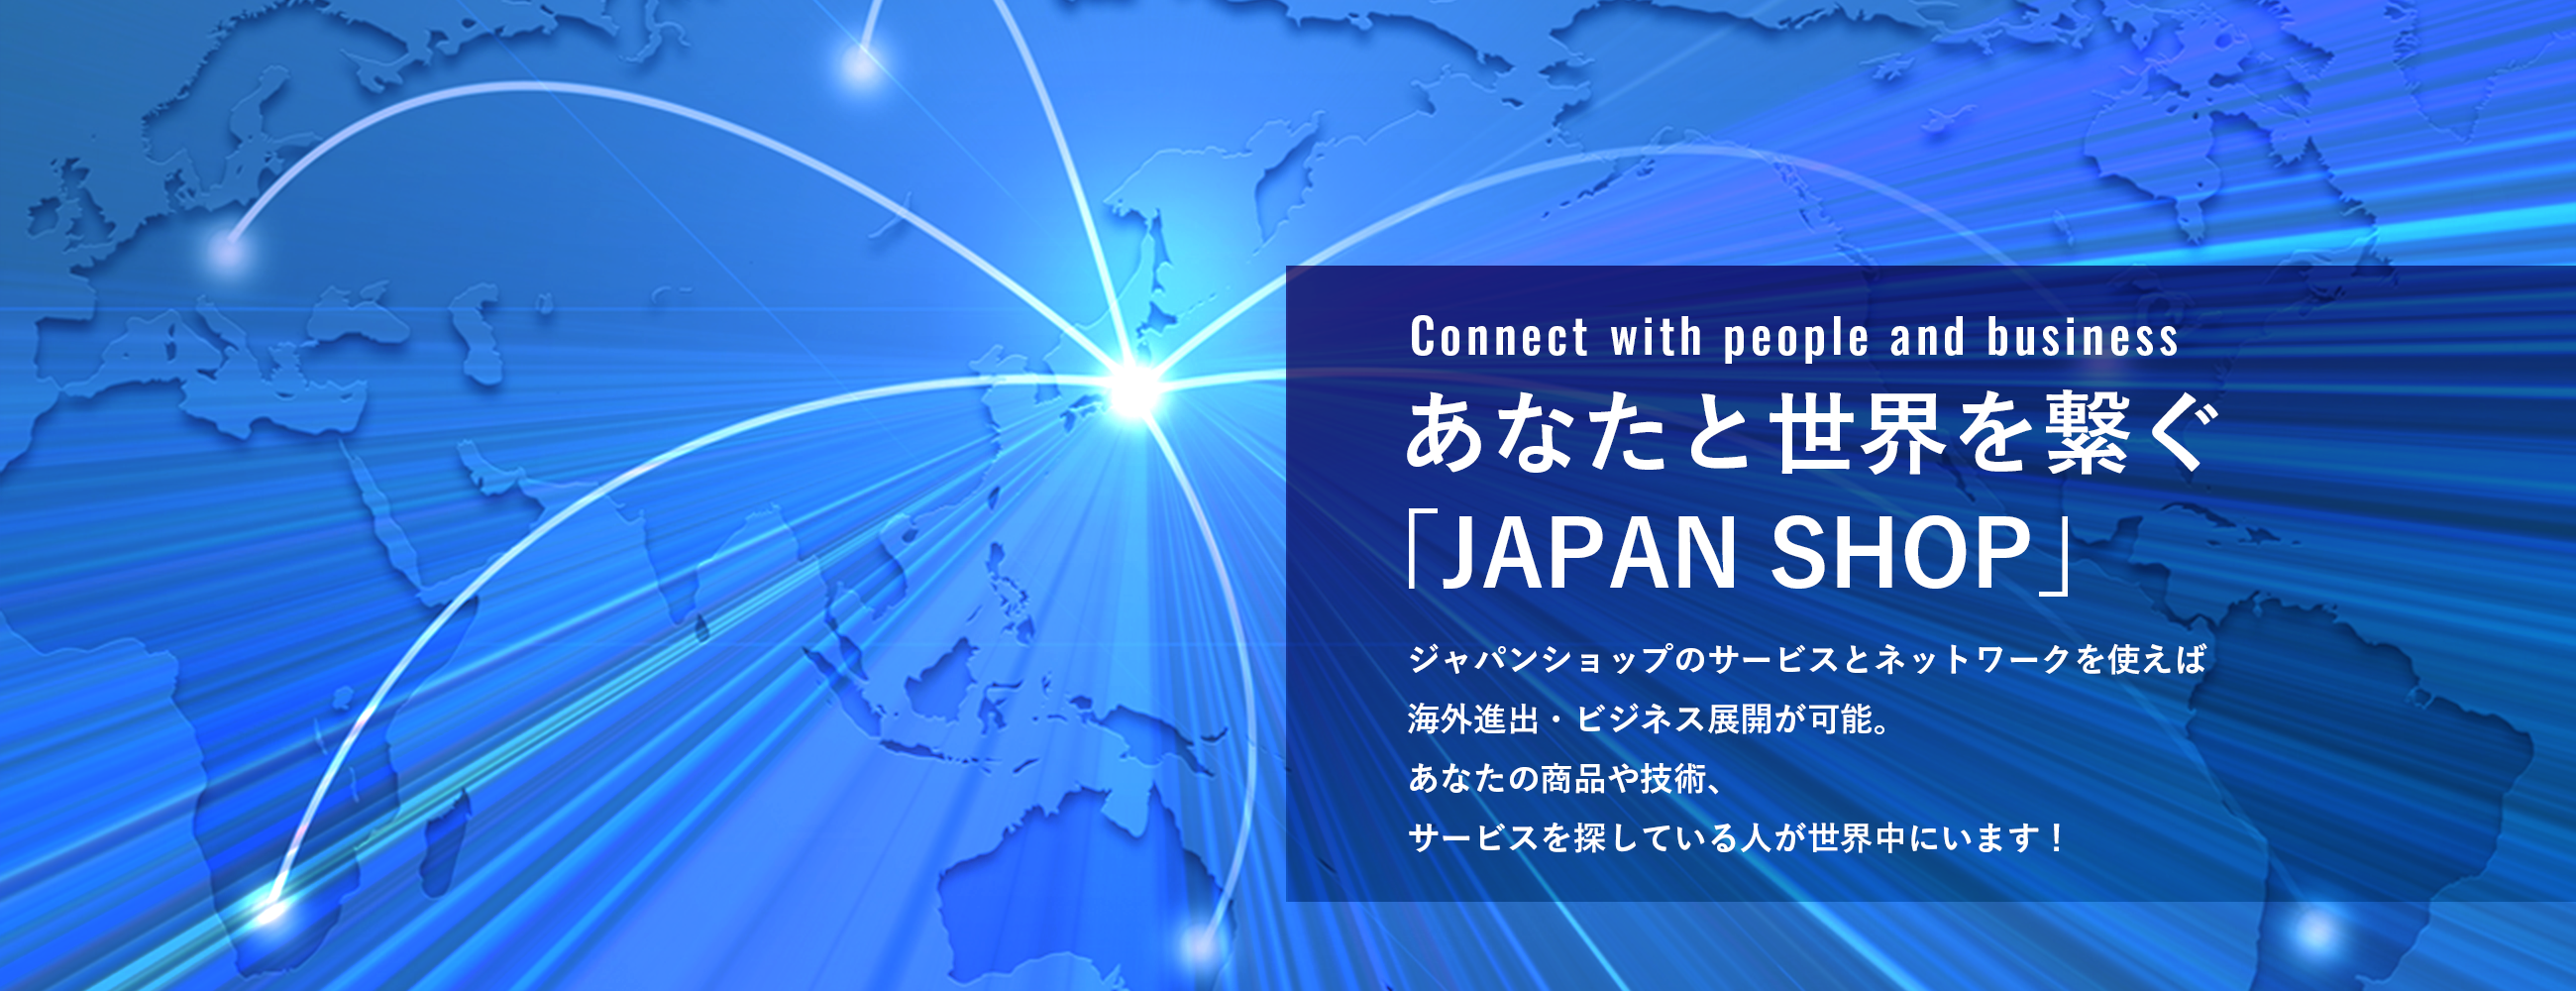 あなたと世界を繋ぐ「JAPAN SHOP」JAPAN SHOPのサービスとネットワークを使えば海外進出・ビジネス展開が可能。あなたの商品や技術、サービスを探している人が世界中にいます！